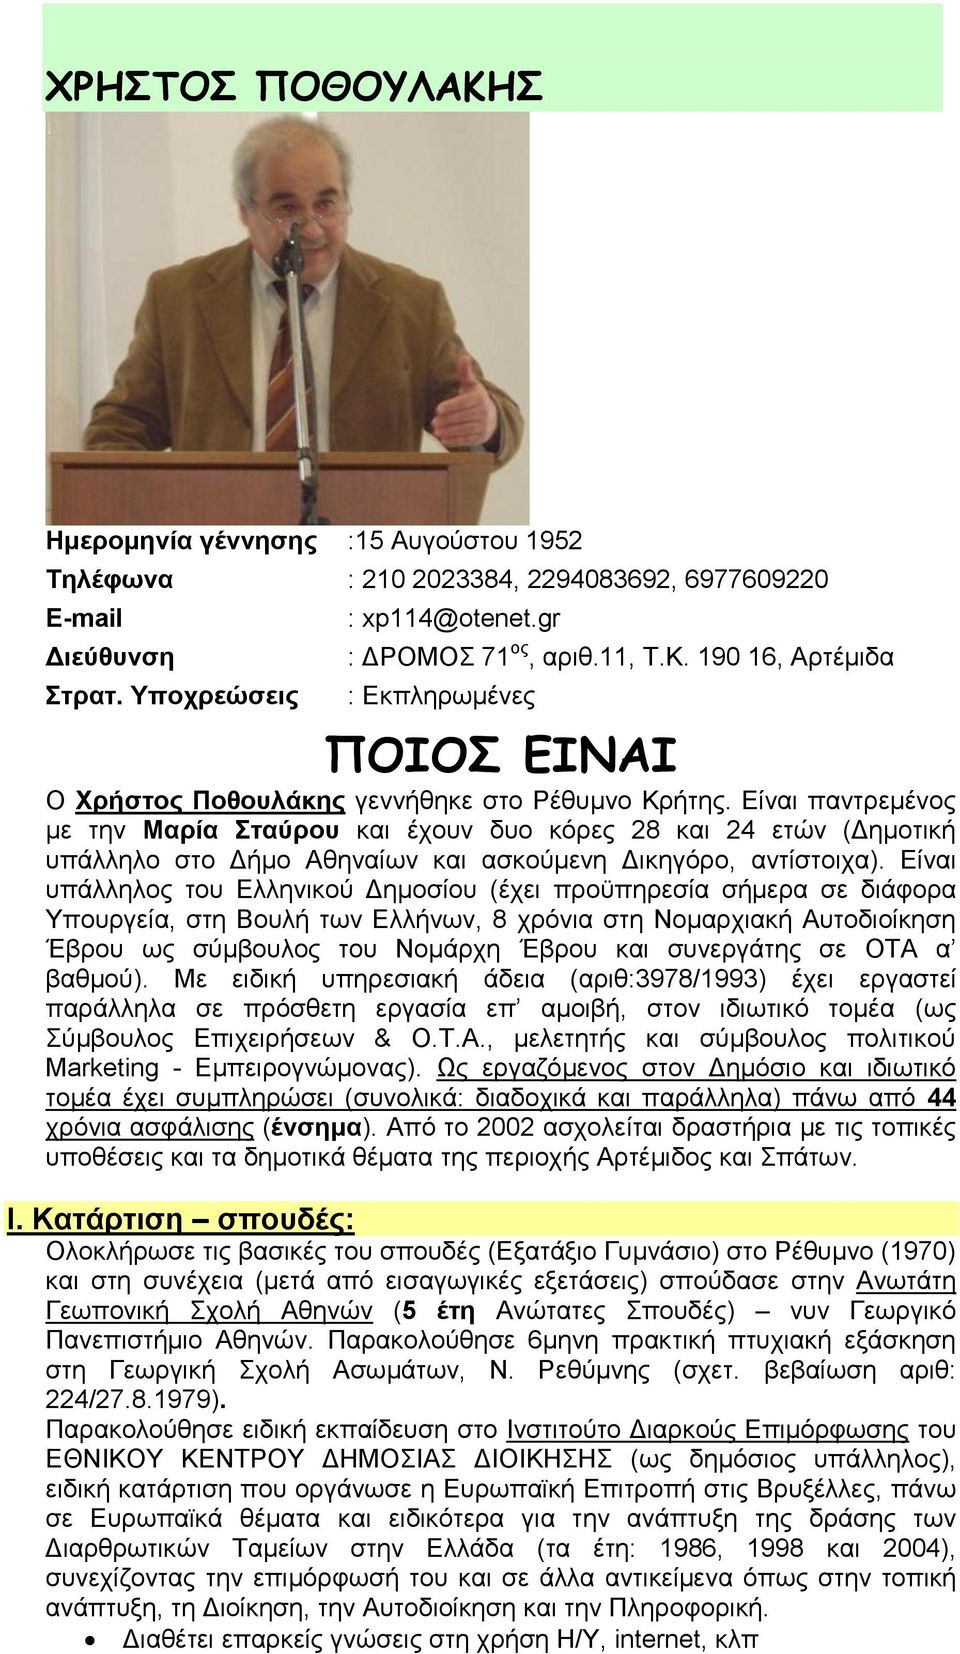 Είναι υπάλληλος του Ελληνικού Δημοσίου (έχει προϋπηρεσία σήμερα σε διάφορα Υπουργεία, στη Βουλή των Ελλήνων, 8 χρόνια στη Νομαρχιακή Αυτοδιοίκηση Έβρου ως σύμβουλος του Νομάρχη Έβρου και συνεργάτης